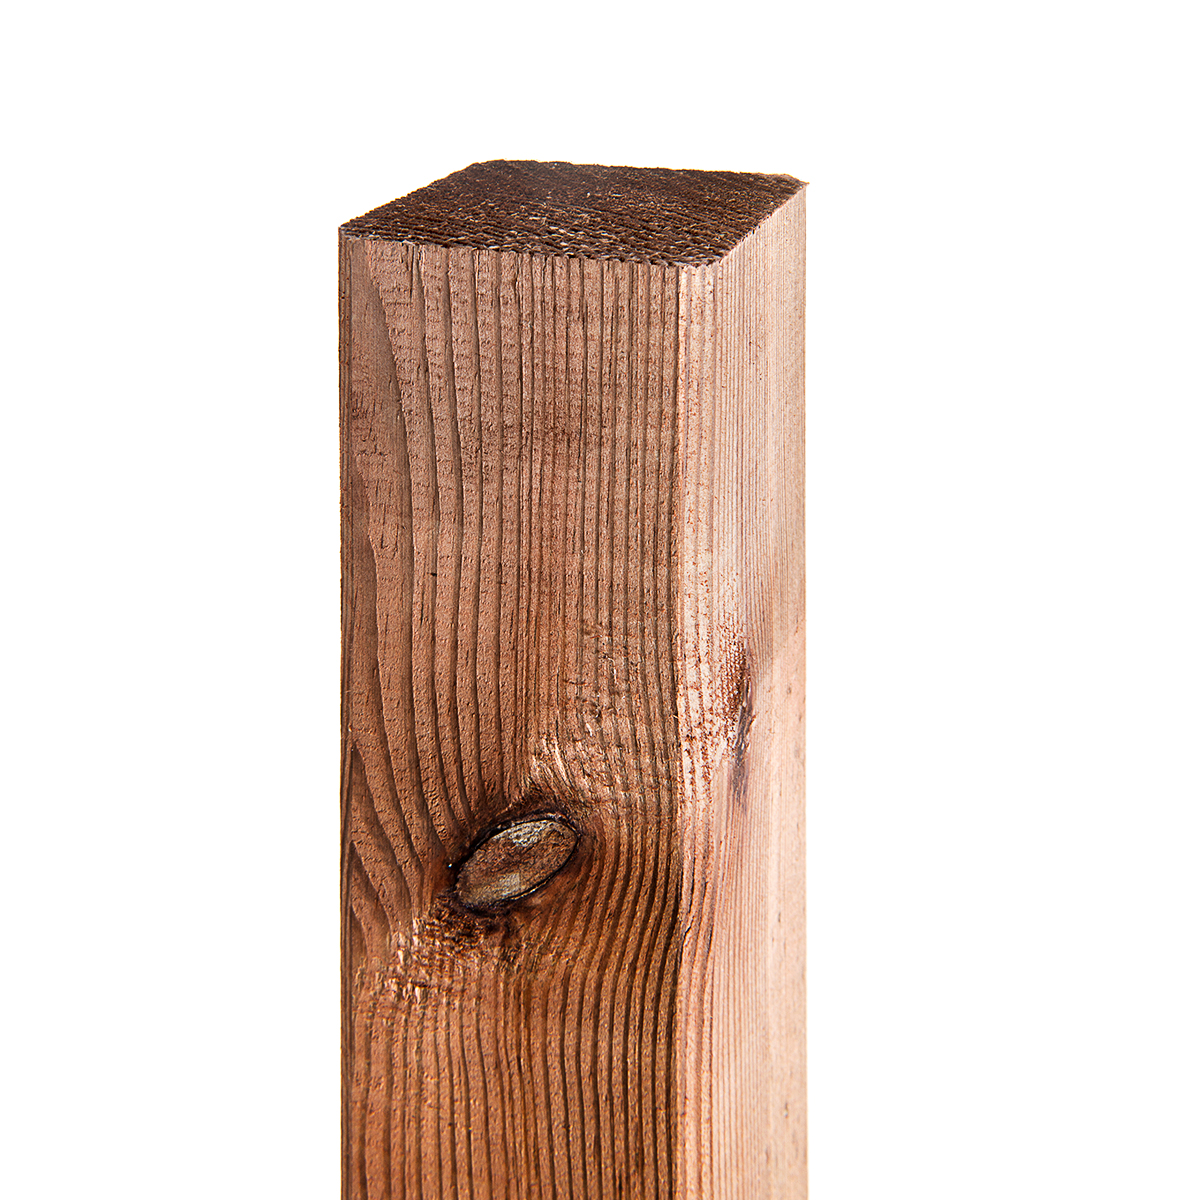 Robusti pali in legno da 1 m, 1,5 m e 1,8 m di altezza e 7 cm x 7 cm per applicazioni versatili